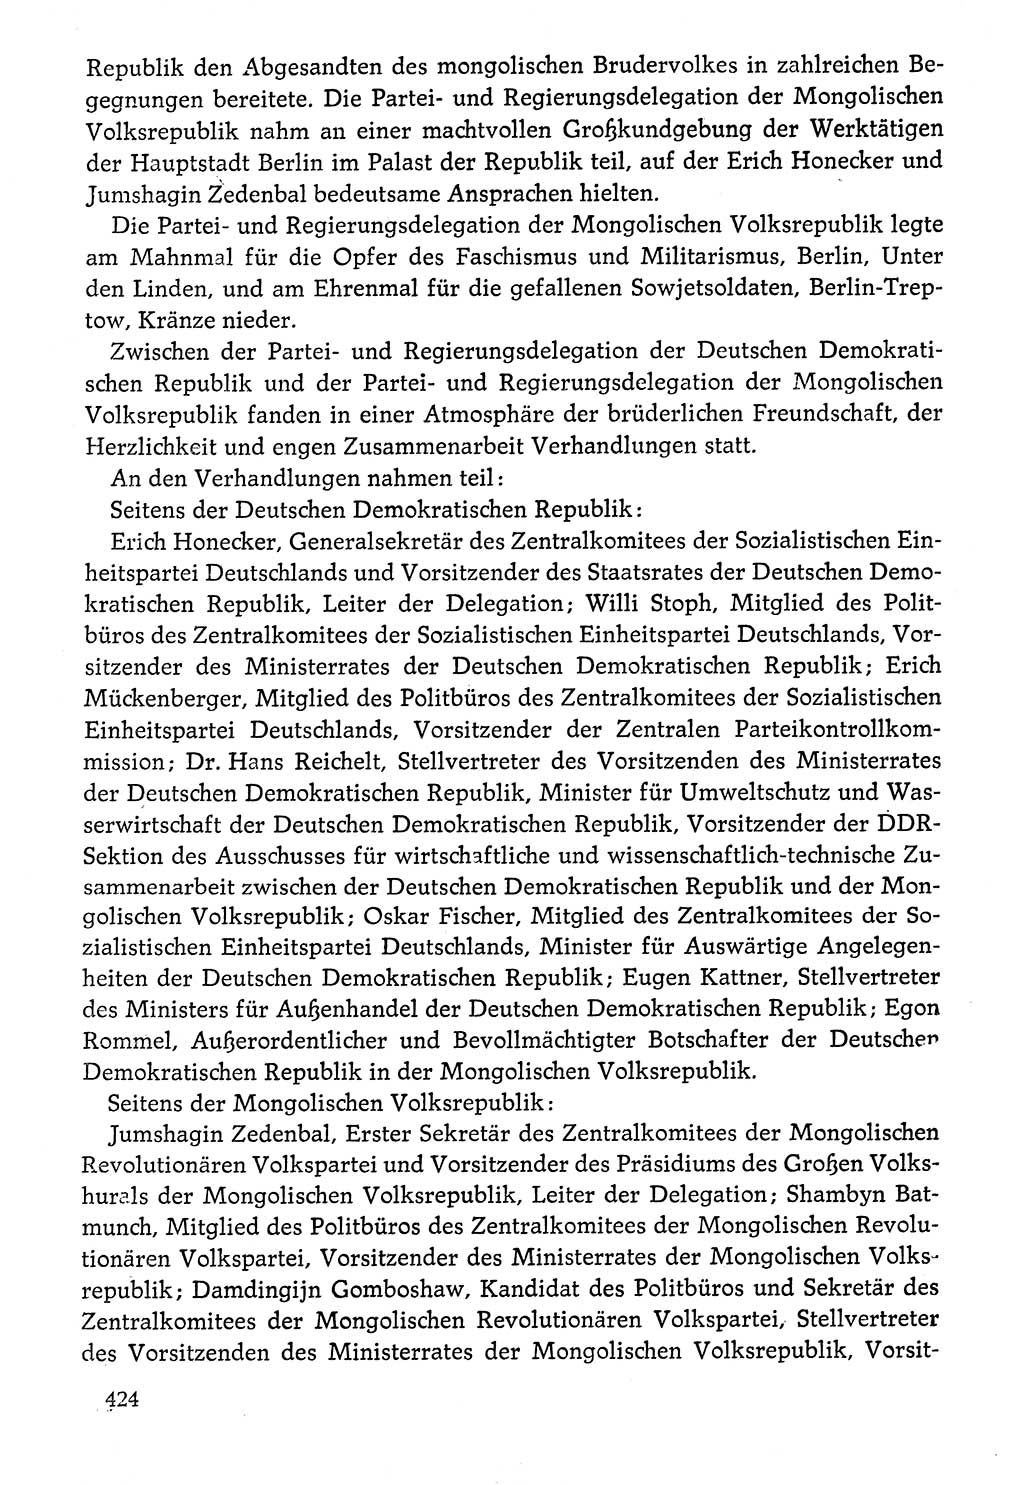 Dokumente der Sozialistischen Einheitspartei Deutschlands (SED) [Deutsche Demokratische Republik (DDR)] 1976-1977, Seite 424 (Dok. SED DDR 1976-1977, S. 424)